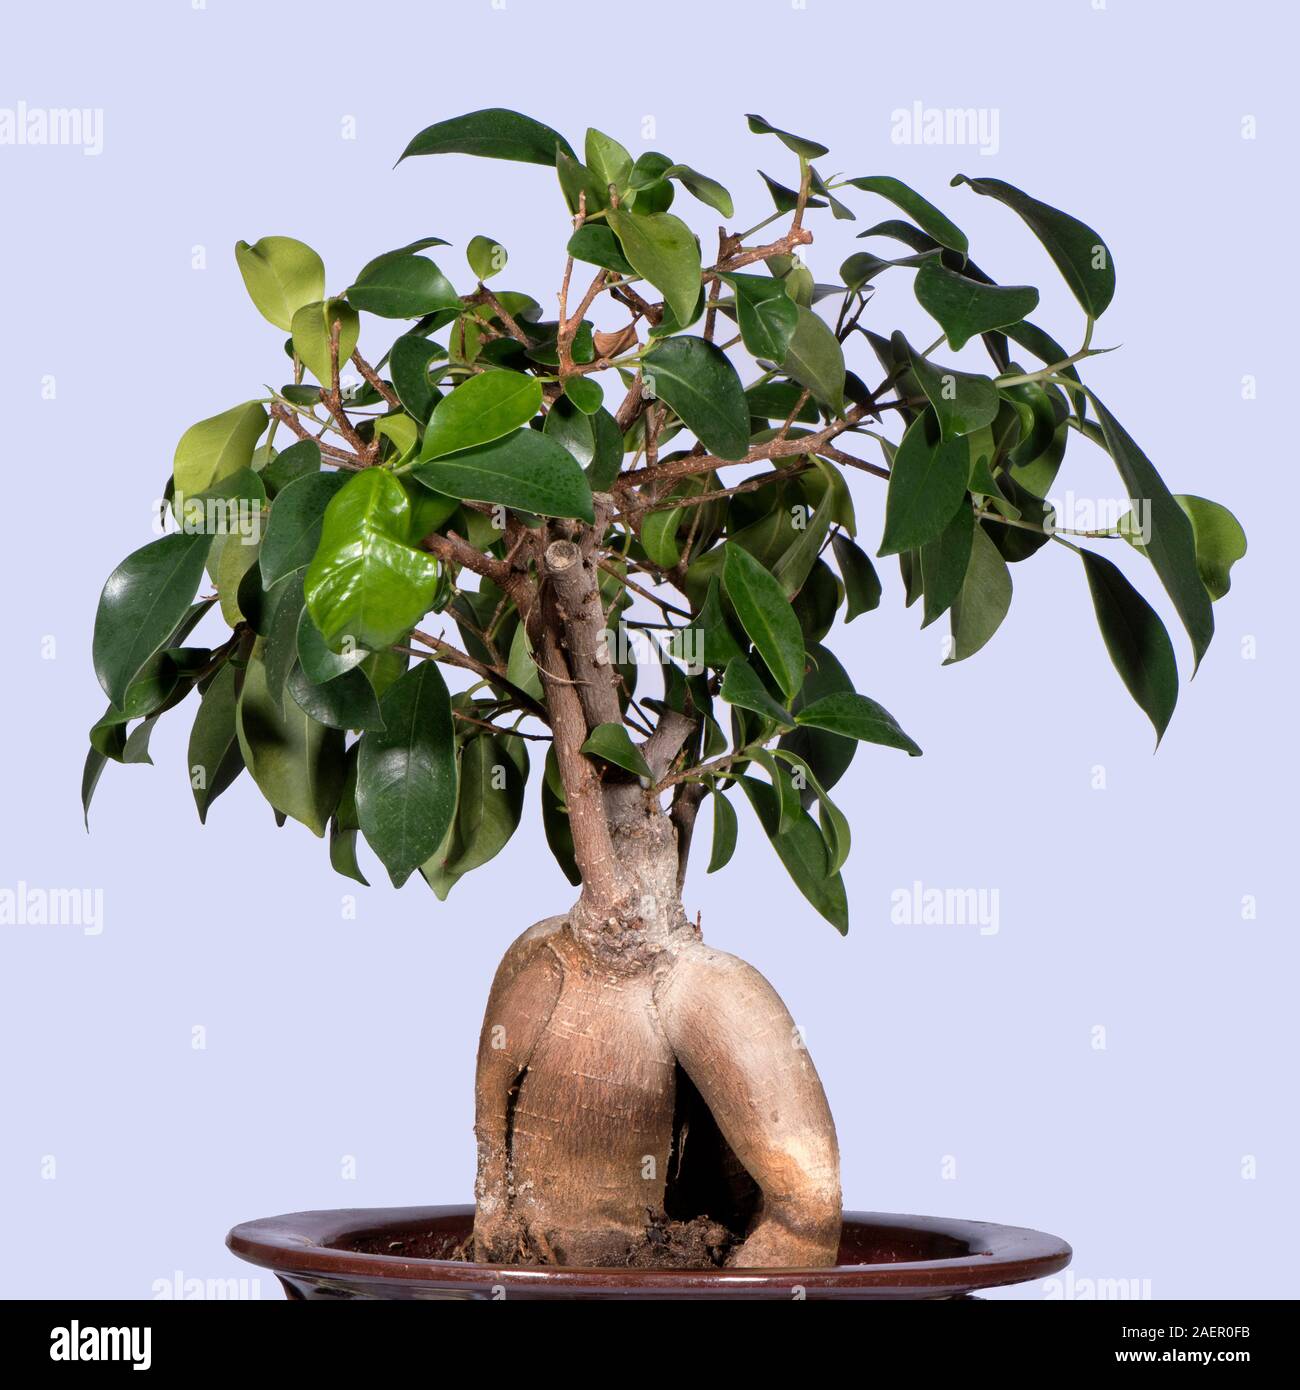 Bosai Ficus microcarpa Ginseng'' o il ginseng fig pianta di casa con una limitata crescita e trunk a bulbo conformata come una radice di ginseng Foto Stock